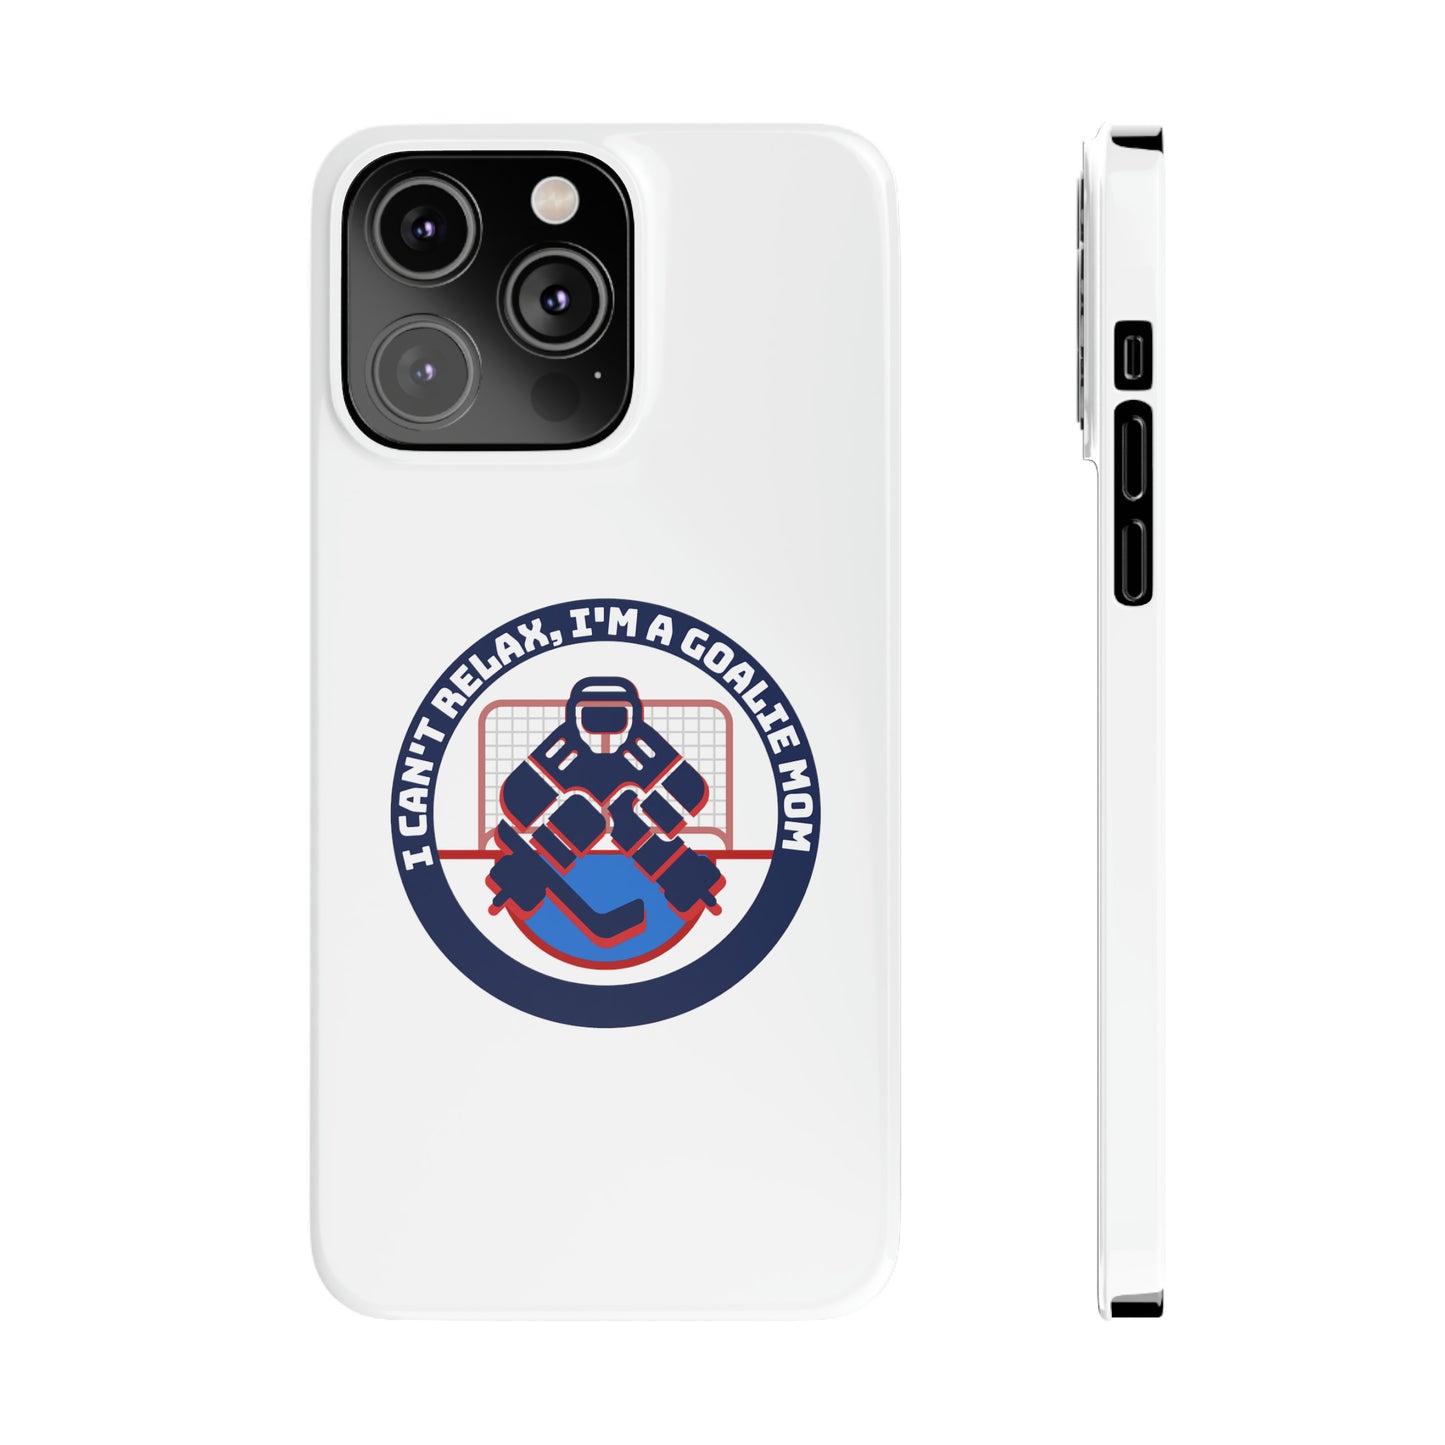 Goalie Mom Phone Case - White